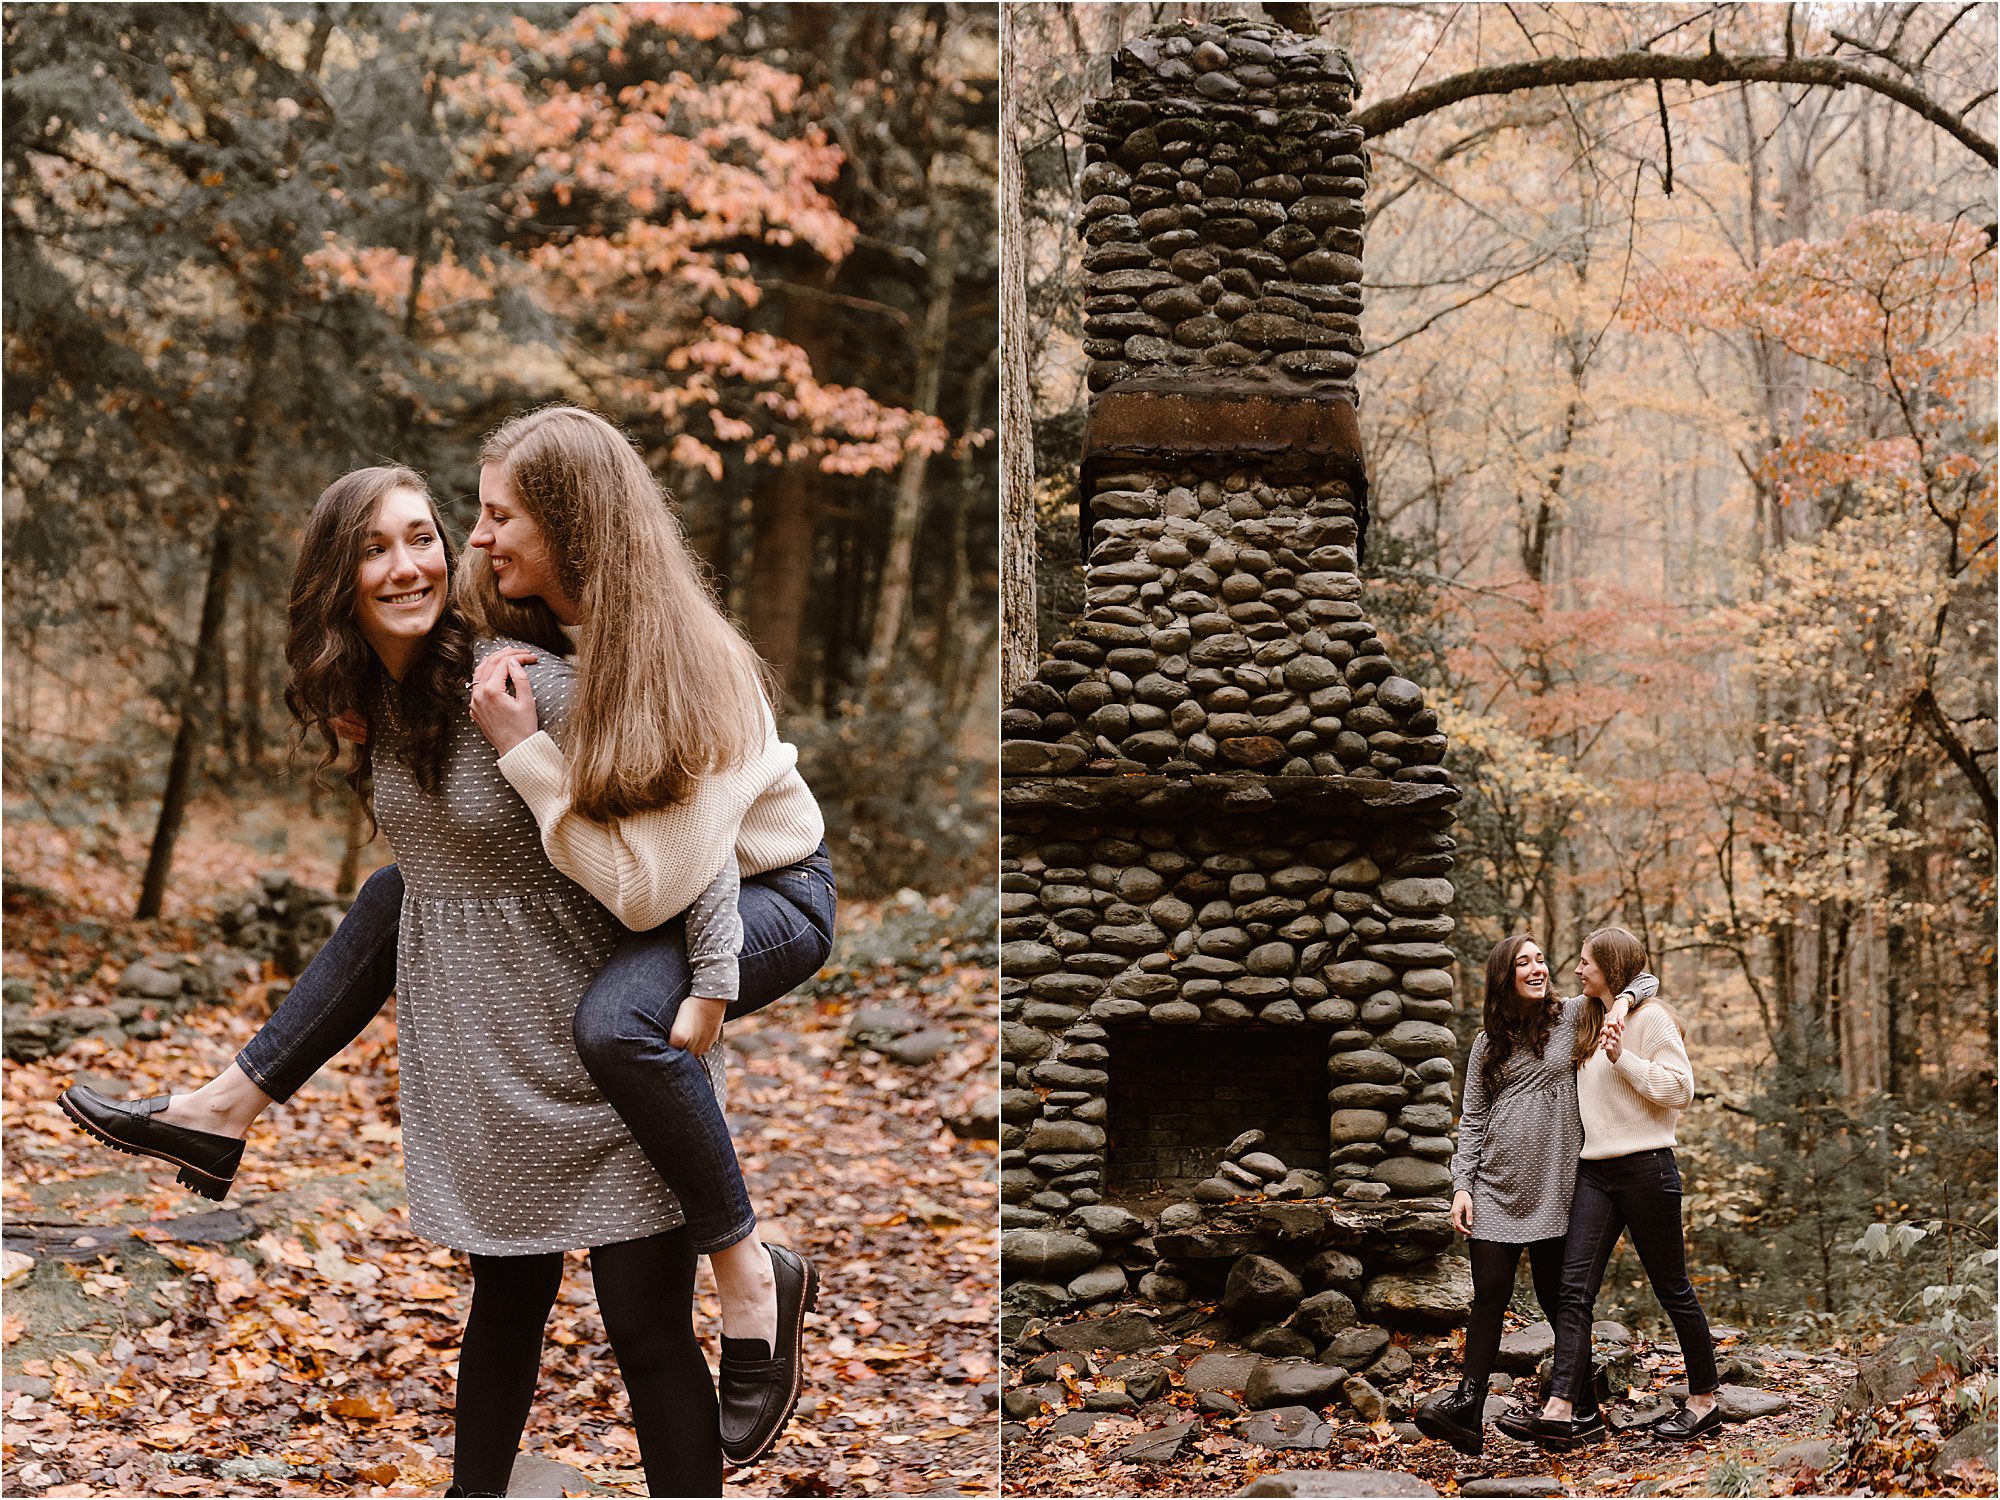 fun autumn engagement photos in the Smoky Mountains